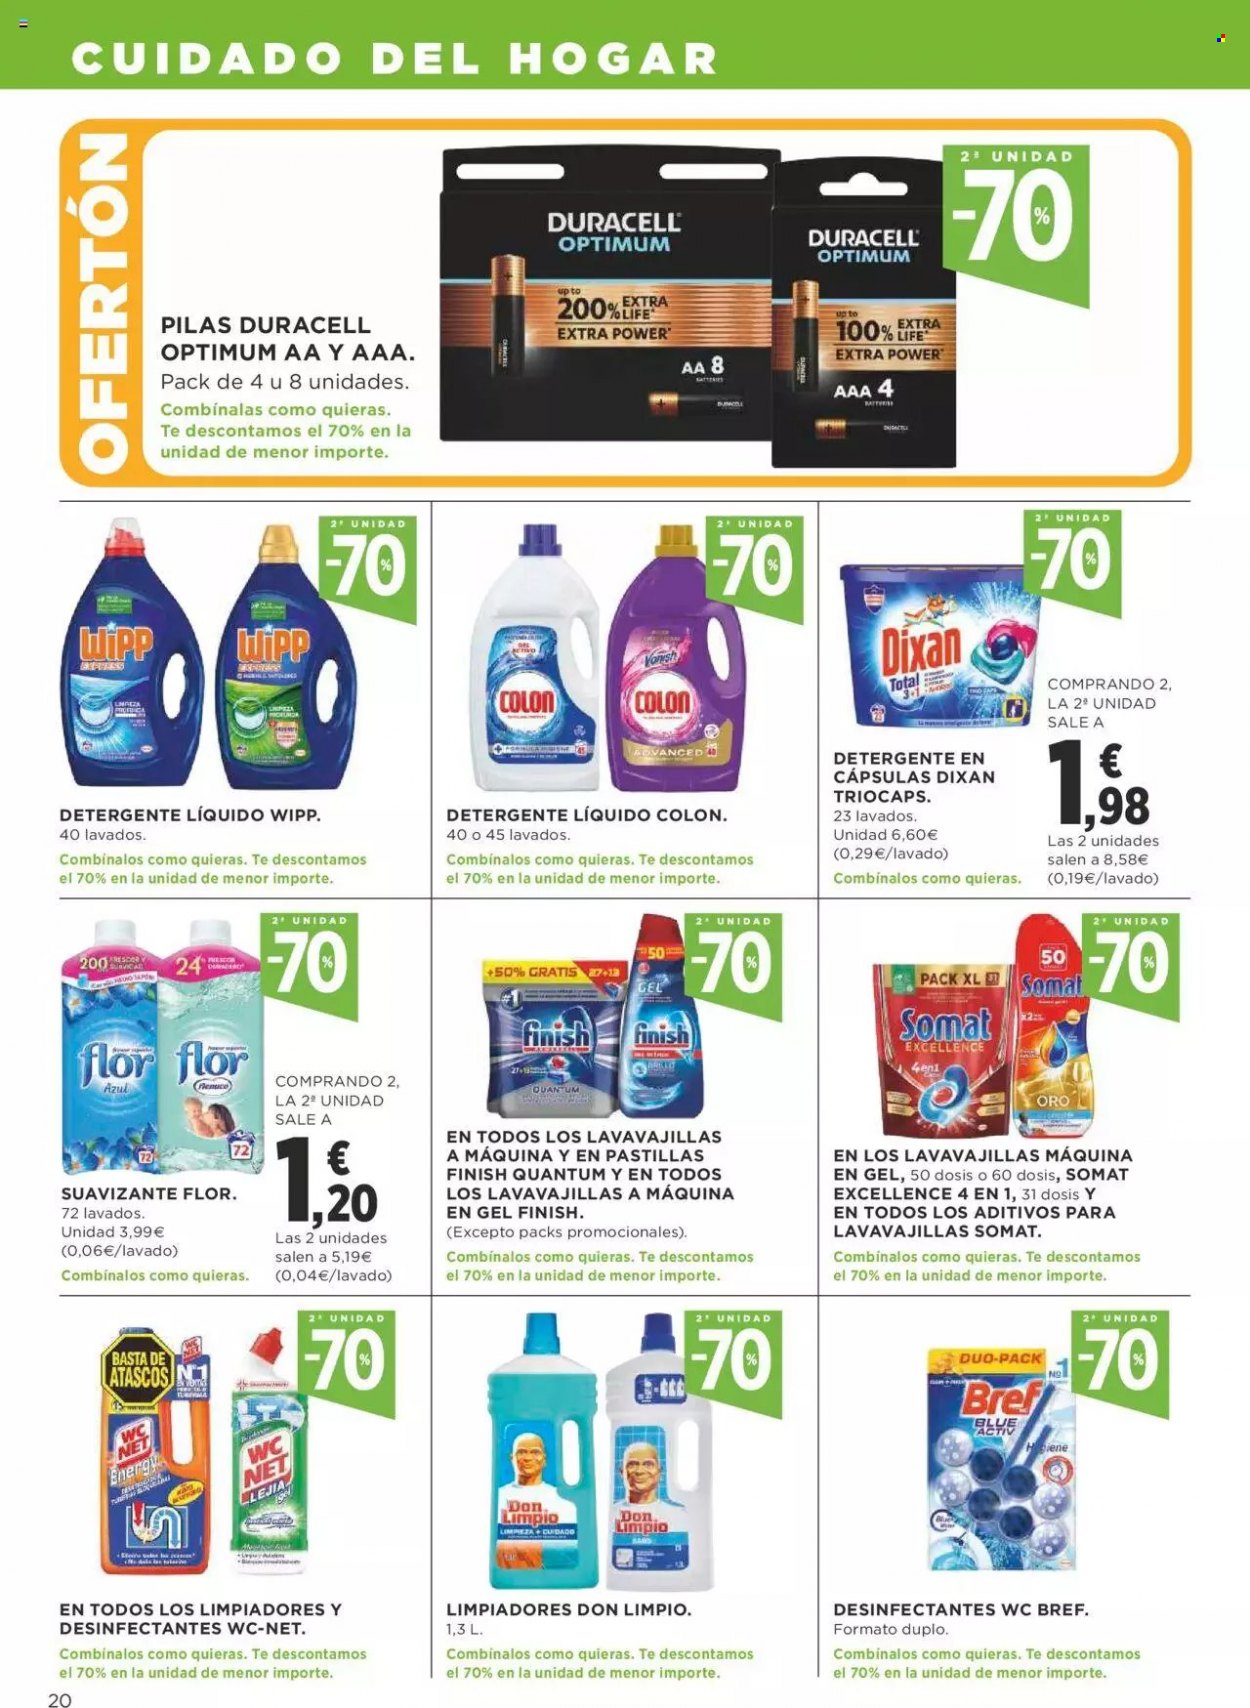 thumbnail - Folleto actual Supercor supermercados - 03/01/22 - 12/01/22 - Ventas - Bref, limpiador, WC Net, detergente, suavizante, detergente en cápsulas, Dixan, Somat, Duracell, pila alcalina. Página 20.